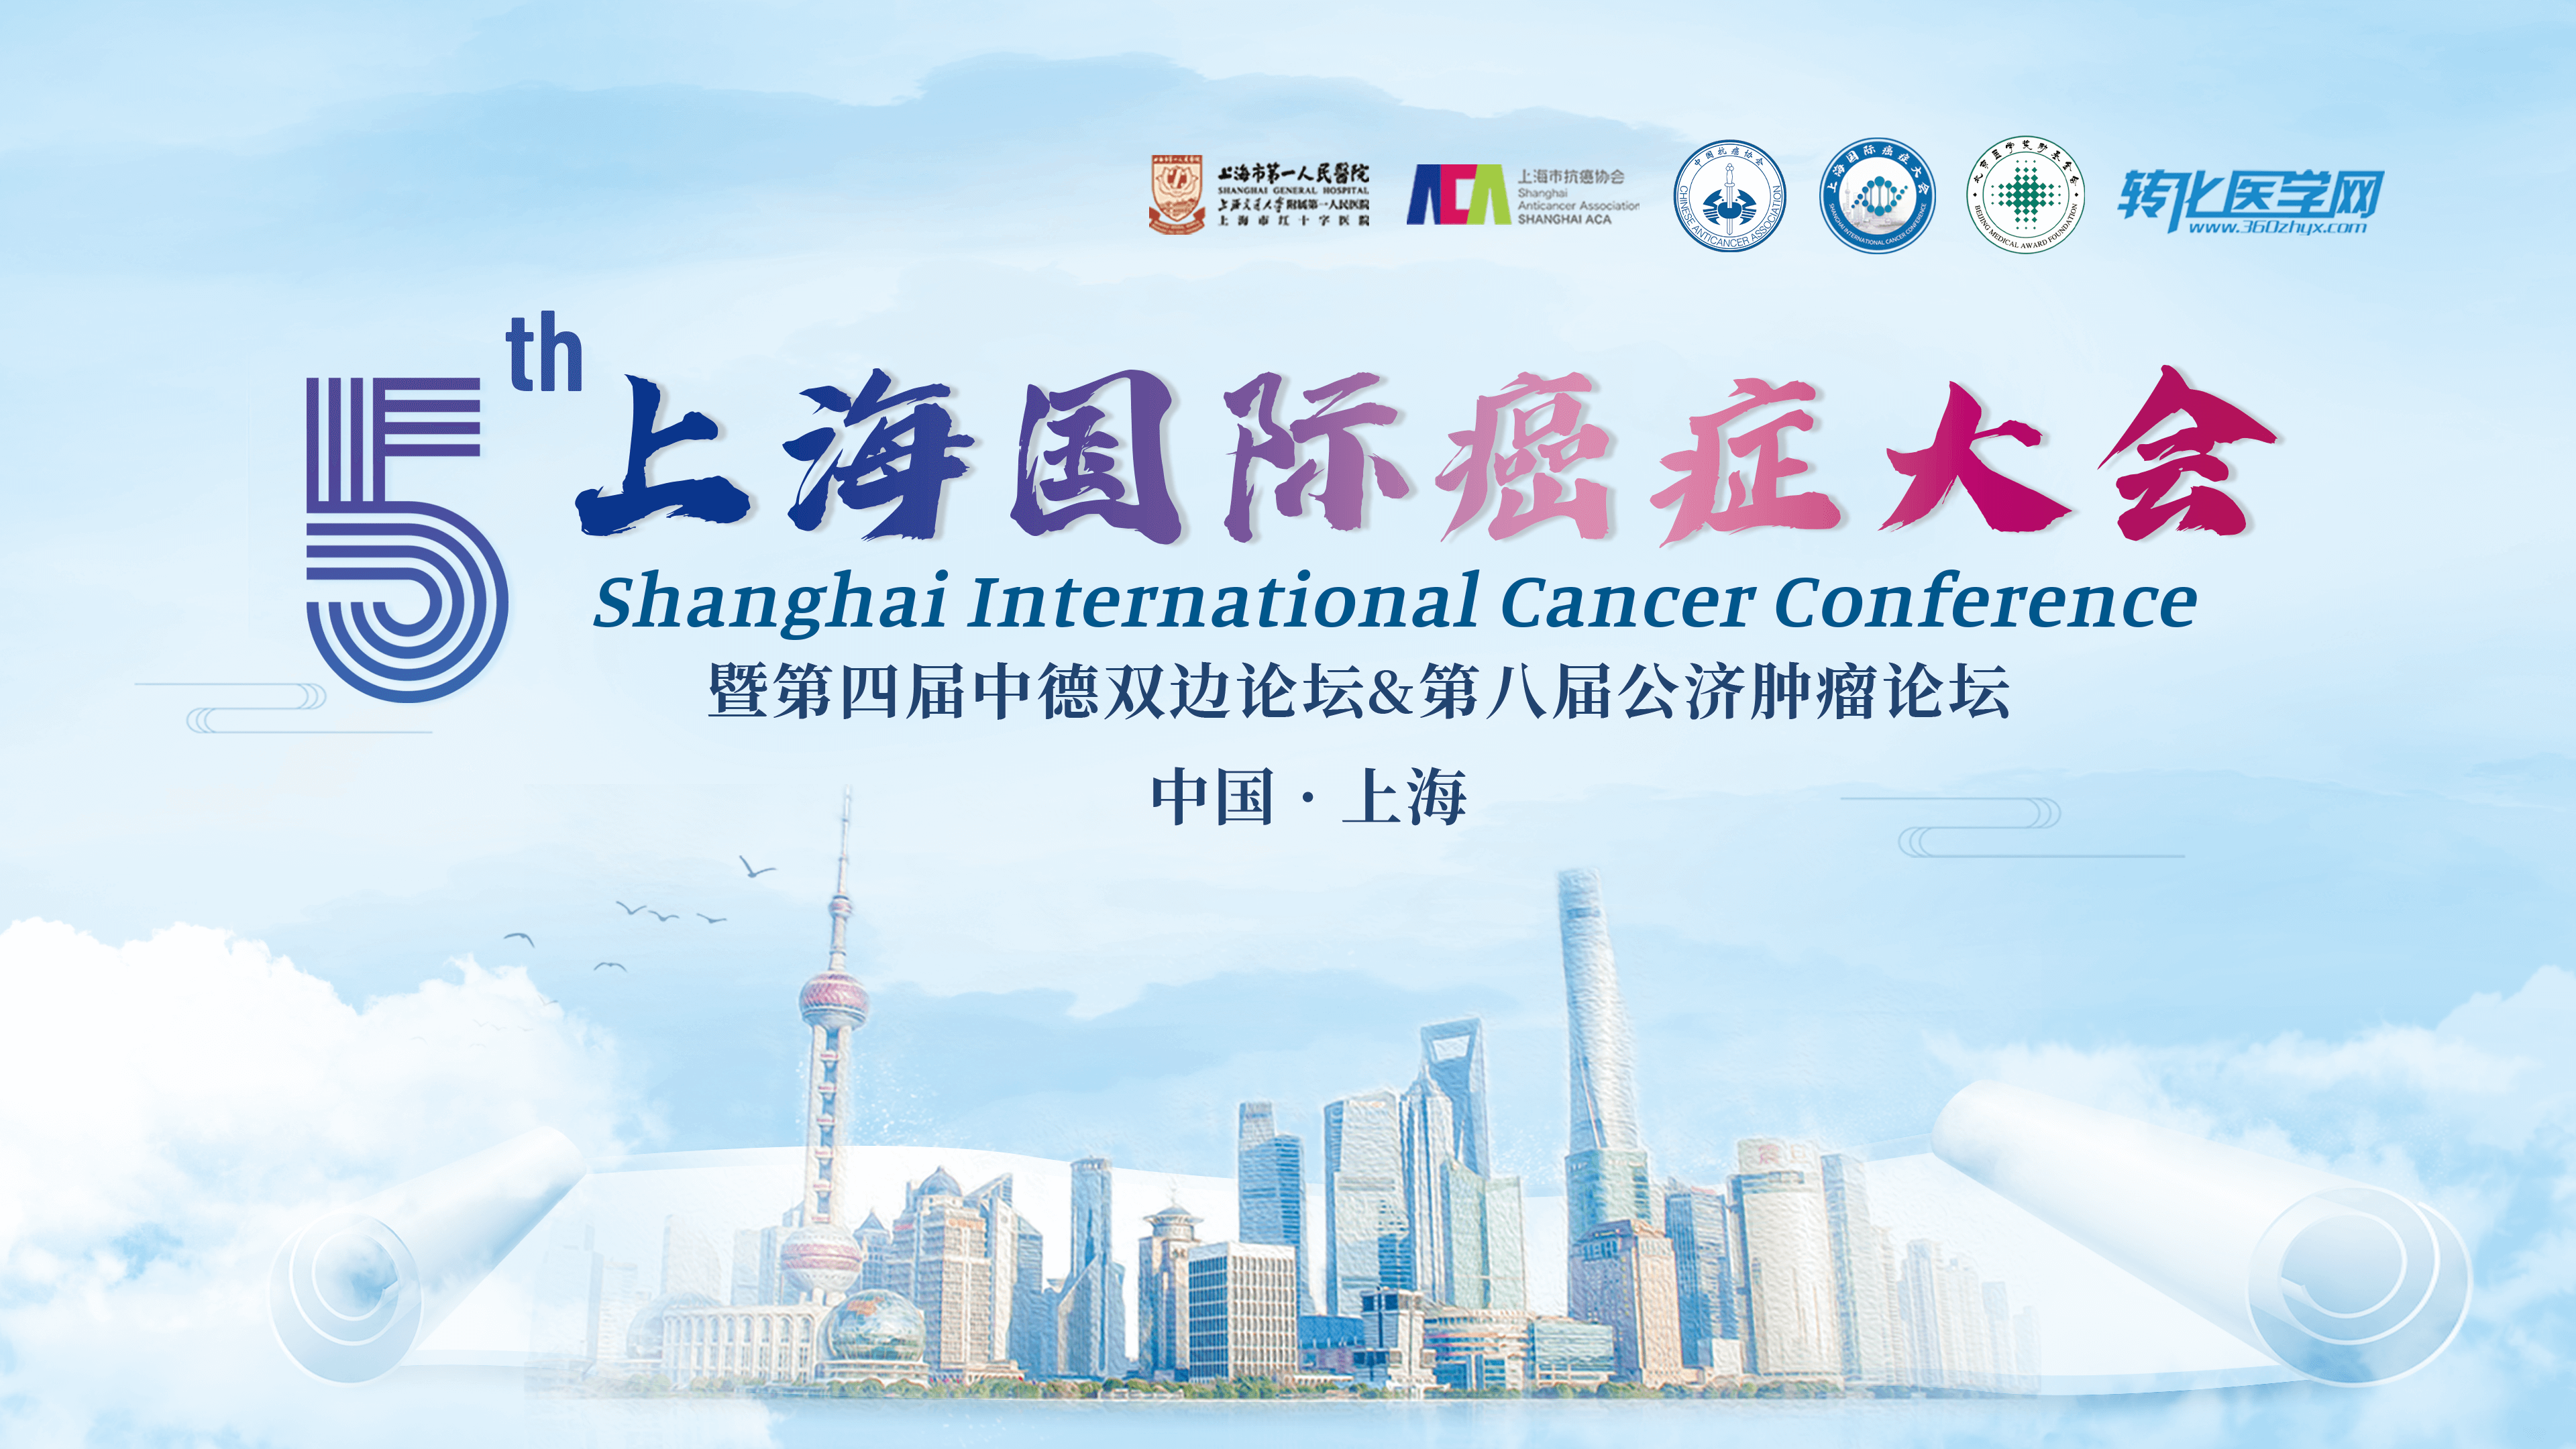 会议通知 |奥格替医学邀您共赴第五届上海国际癌症大会